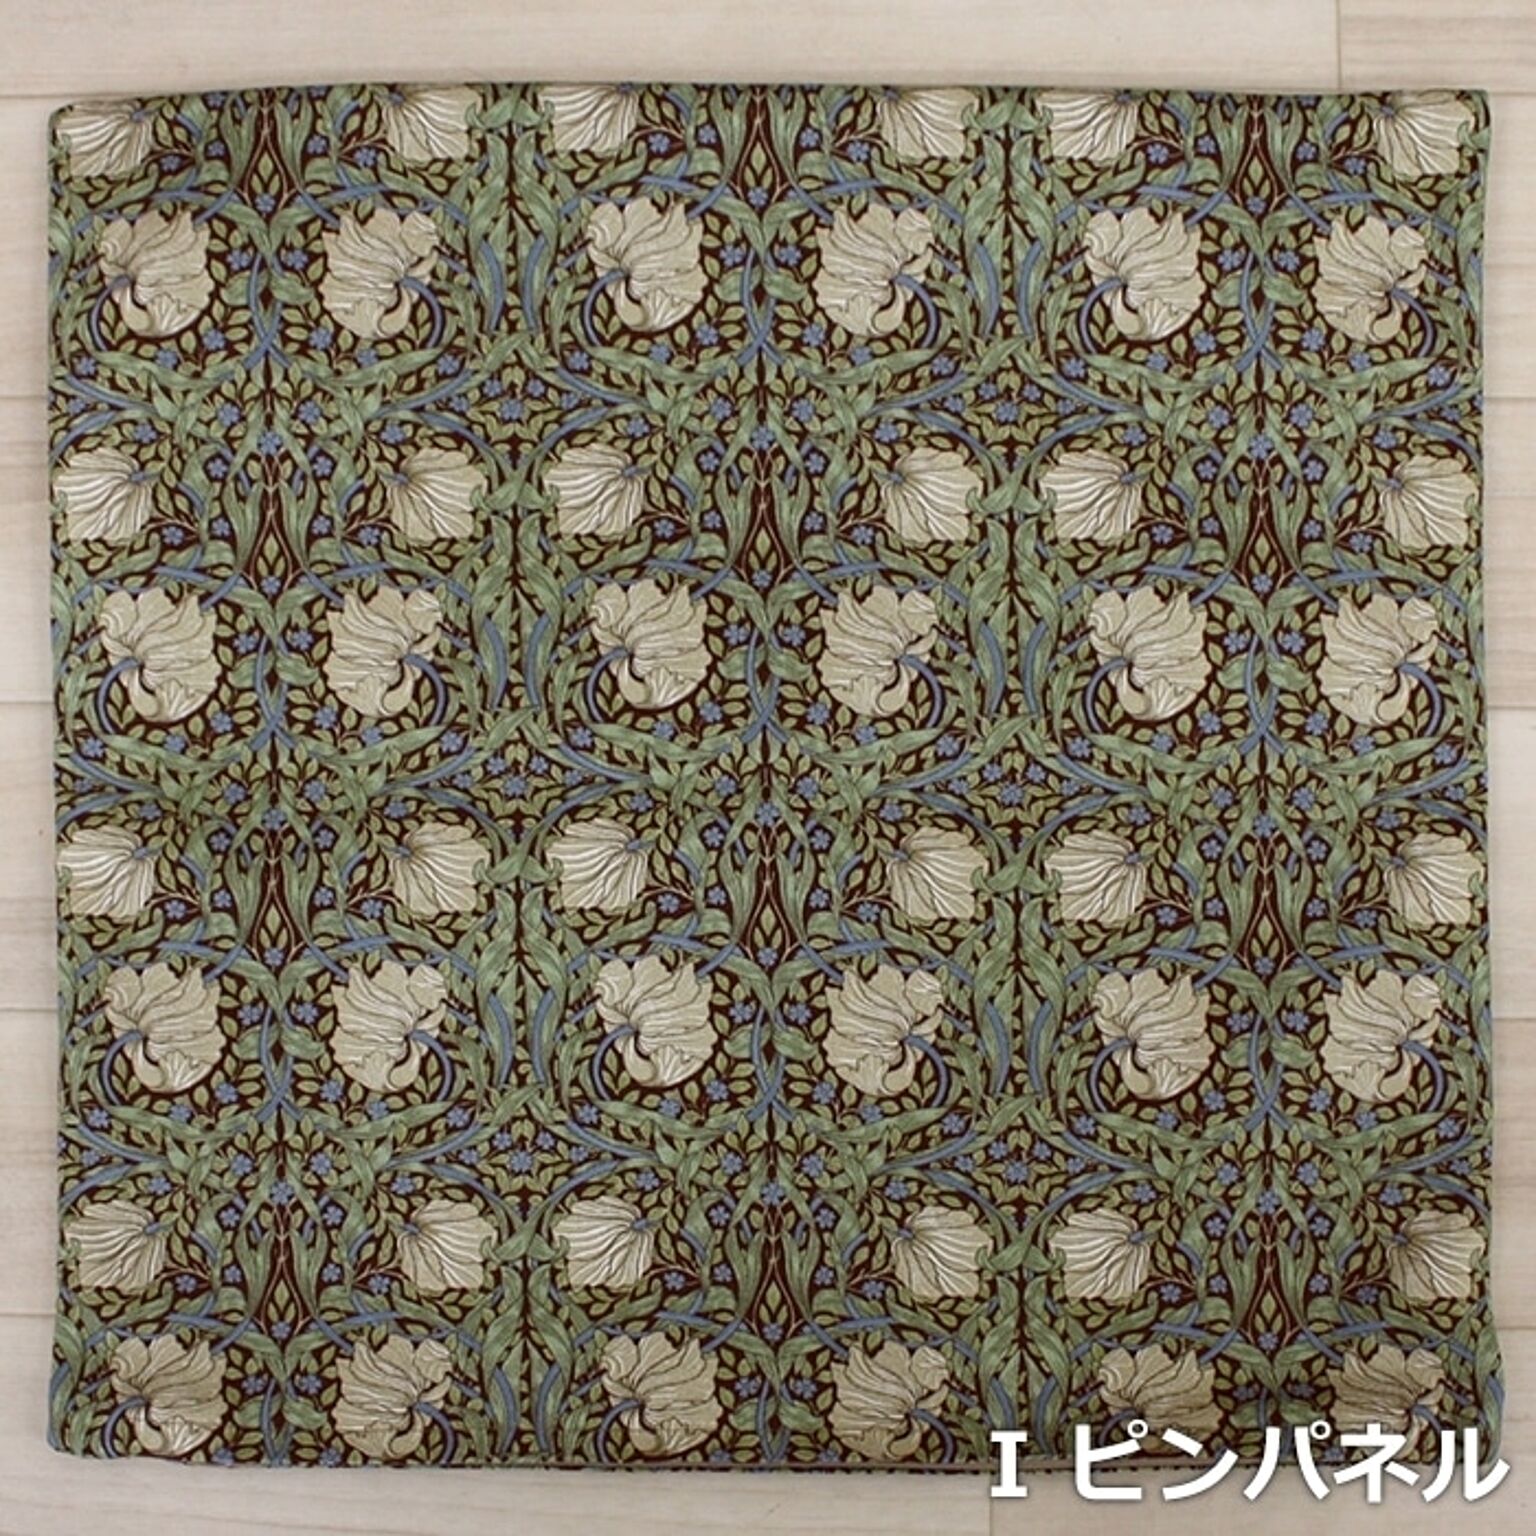 モリスデザイン 手作り クッションカバー 約45×45cm (Y) Morris morisu デザイン Fabric by BEST OF MORRIS